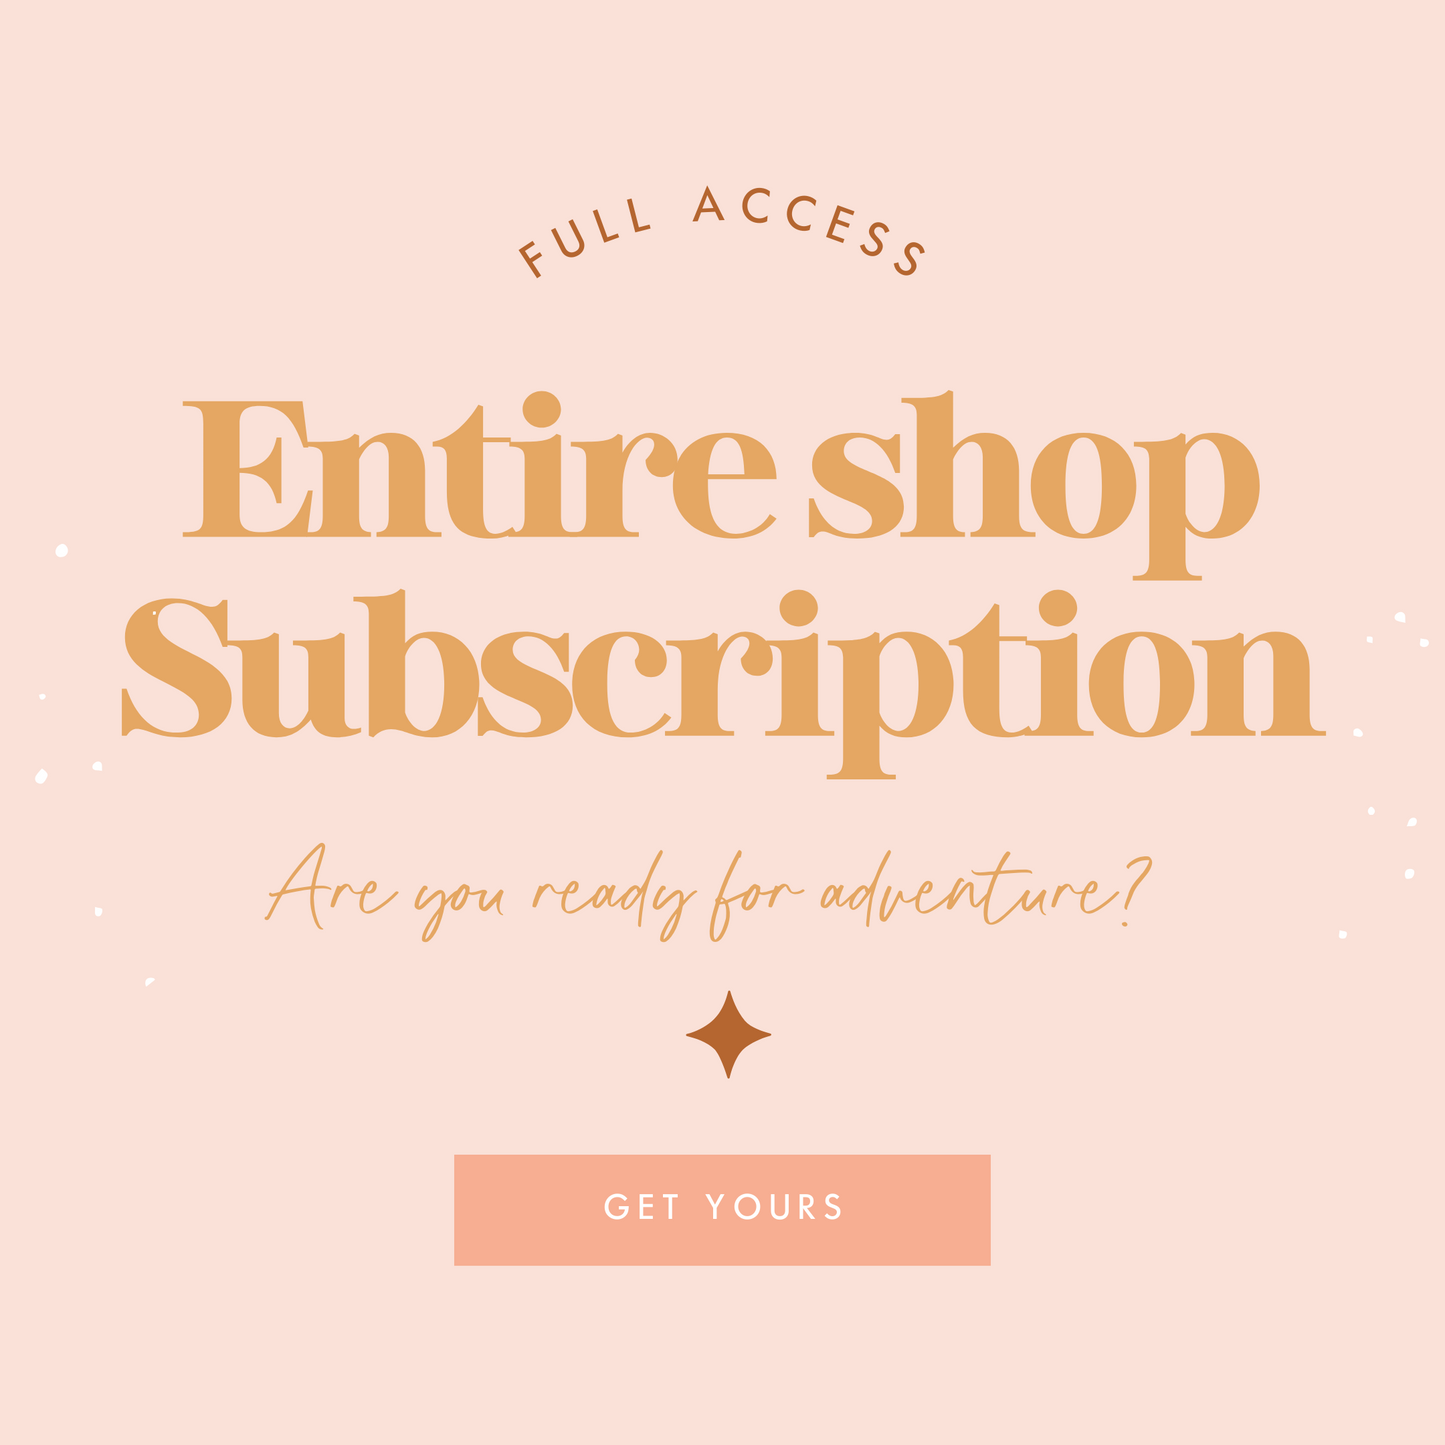 Entire Shop Subscription